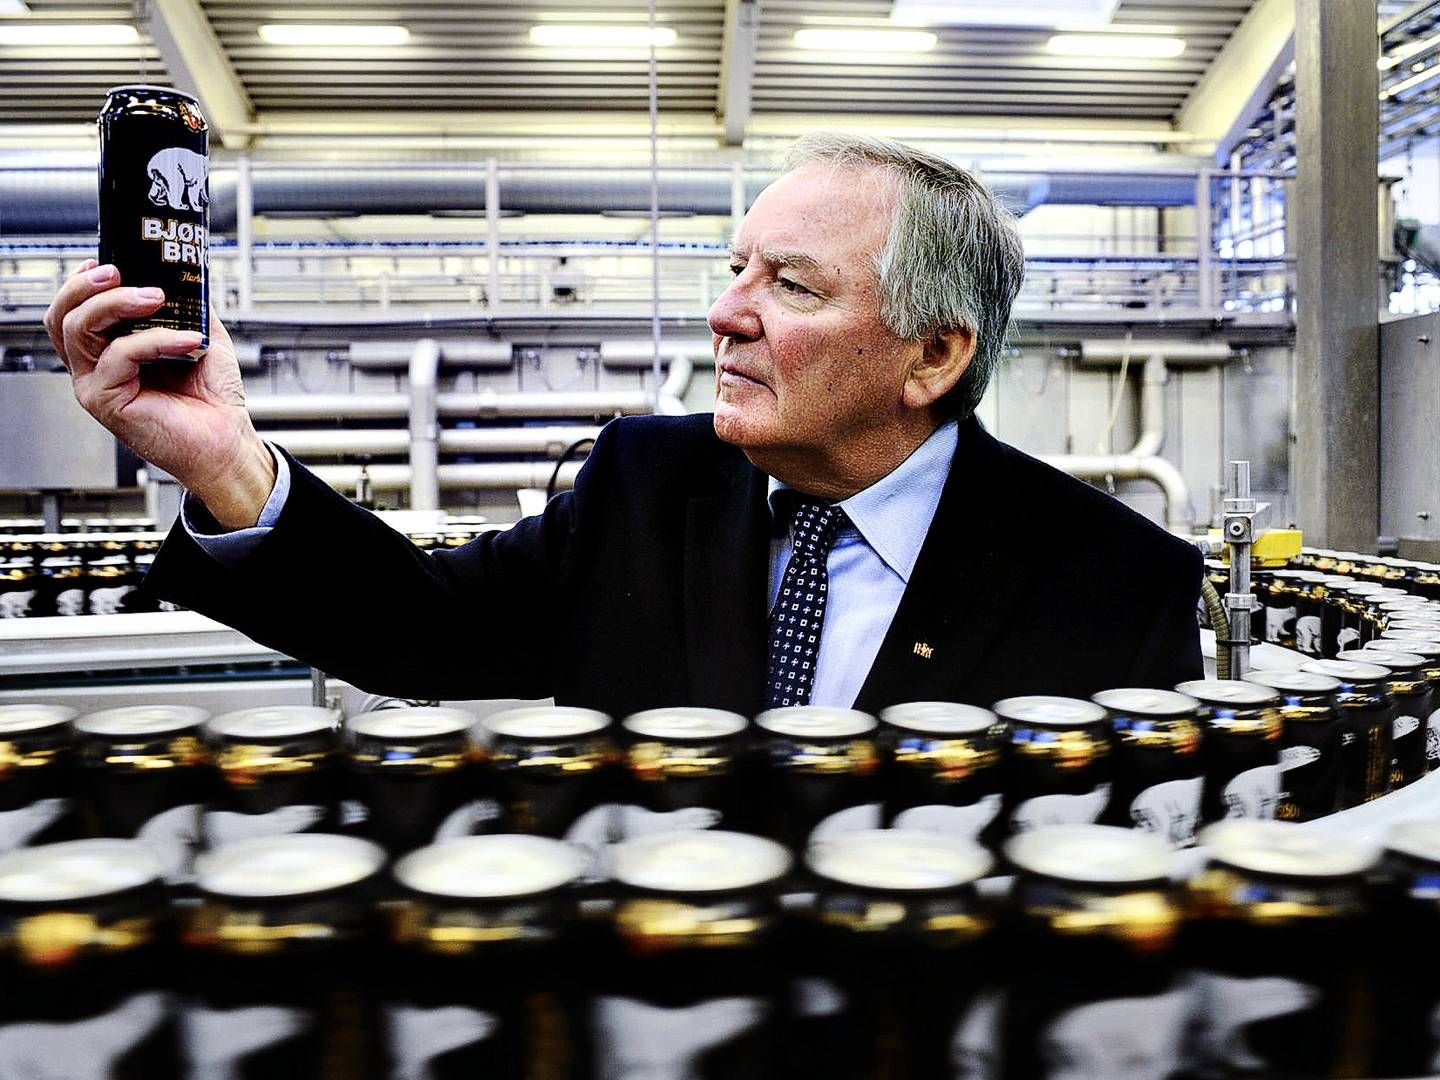 Bernd Griese har været direktør i bryggeriet Harbie fra 1981-1986, hvor han så blev udnævnt til administrerende direktør, som han fortsatte i helt frem til 2019. Nu træder han ud af selskabets bestyrelse. | Photo: Mik Eskestad